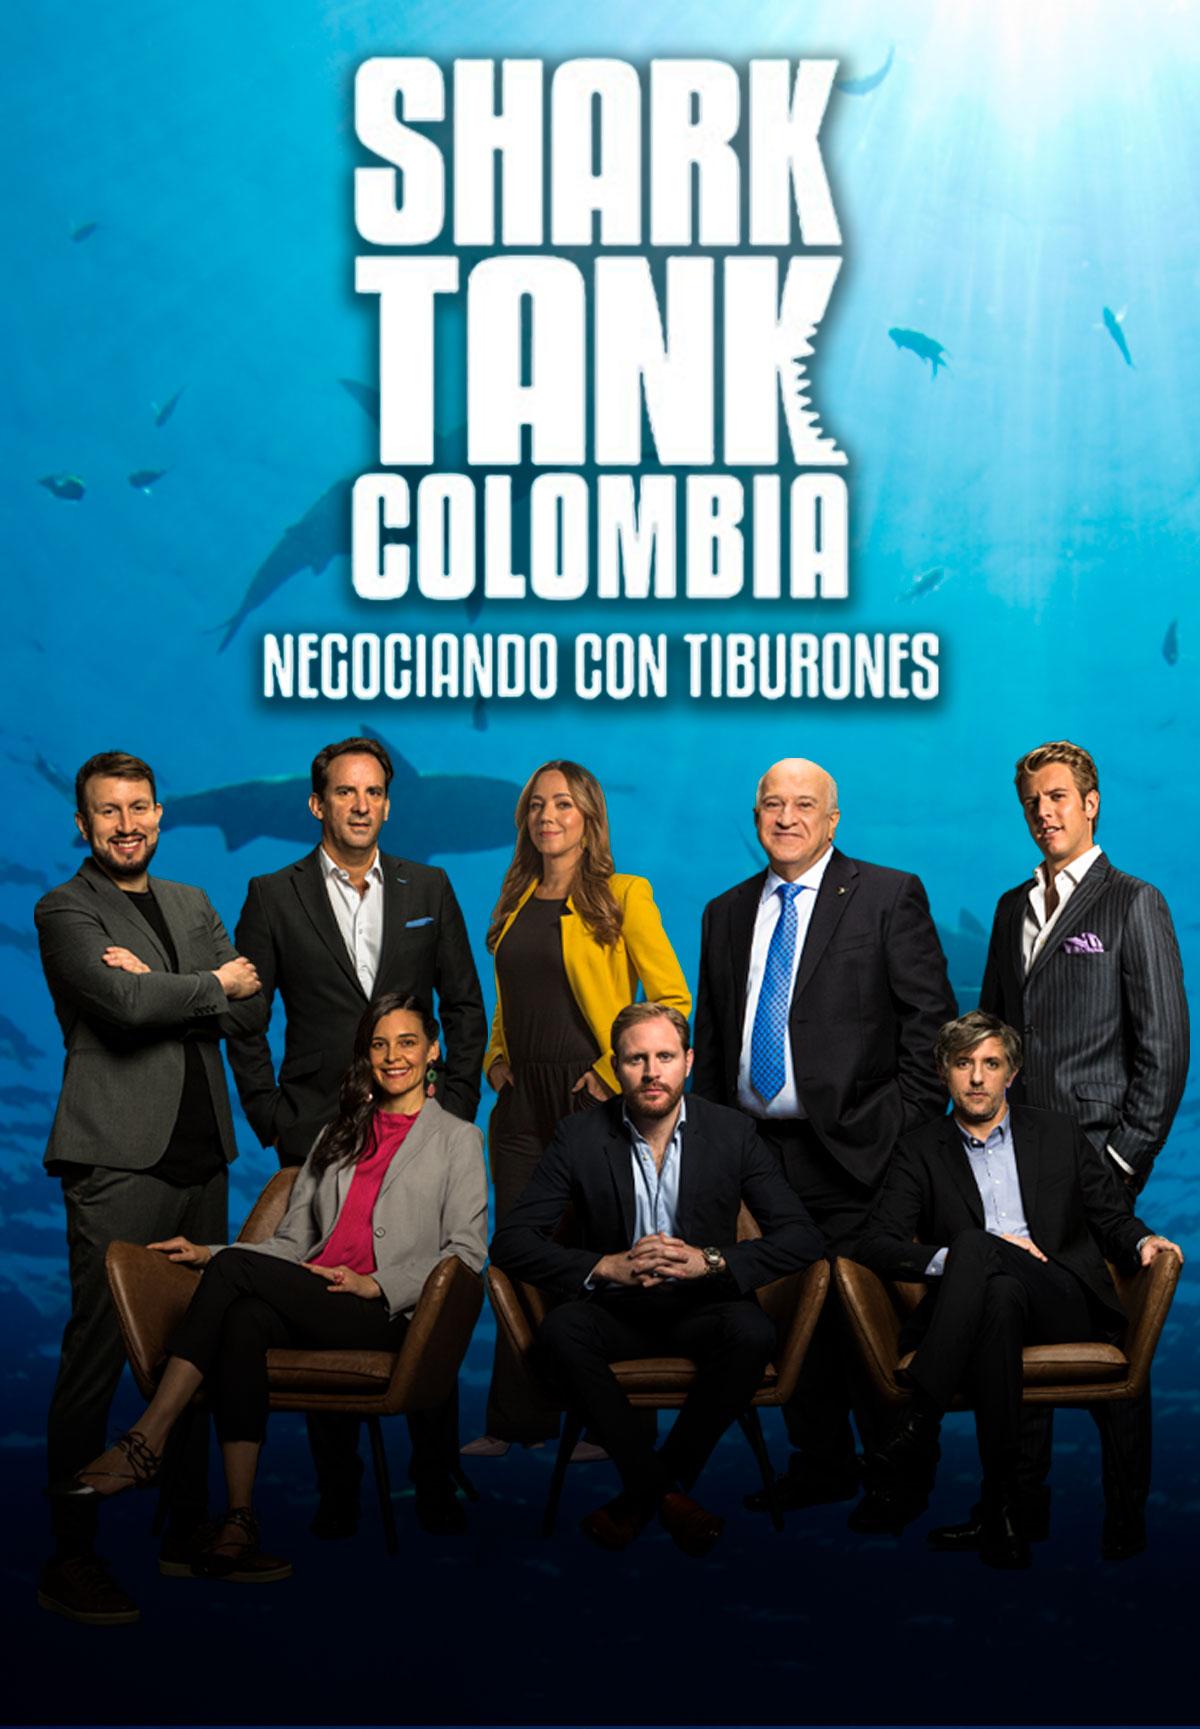 Shark Tank Colombia, negociando con tiburones